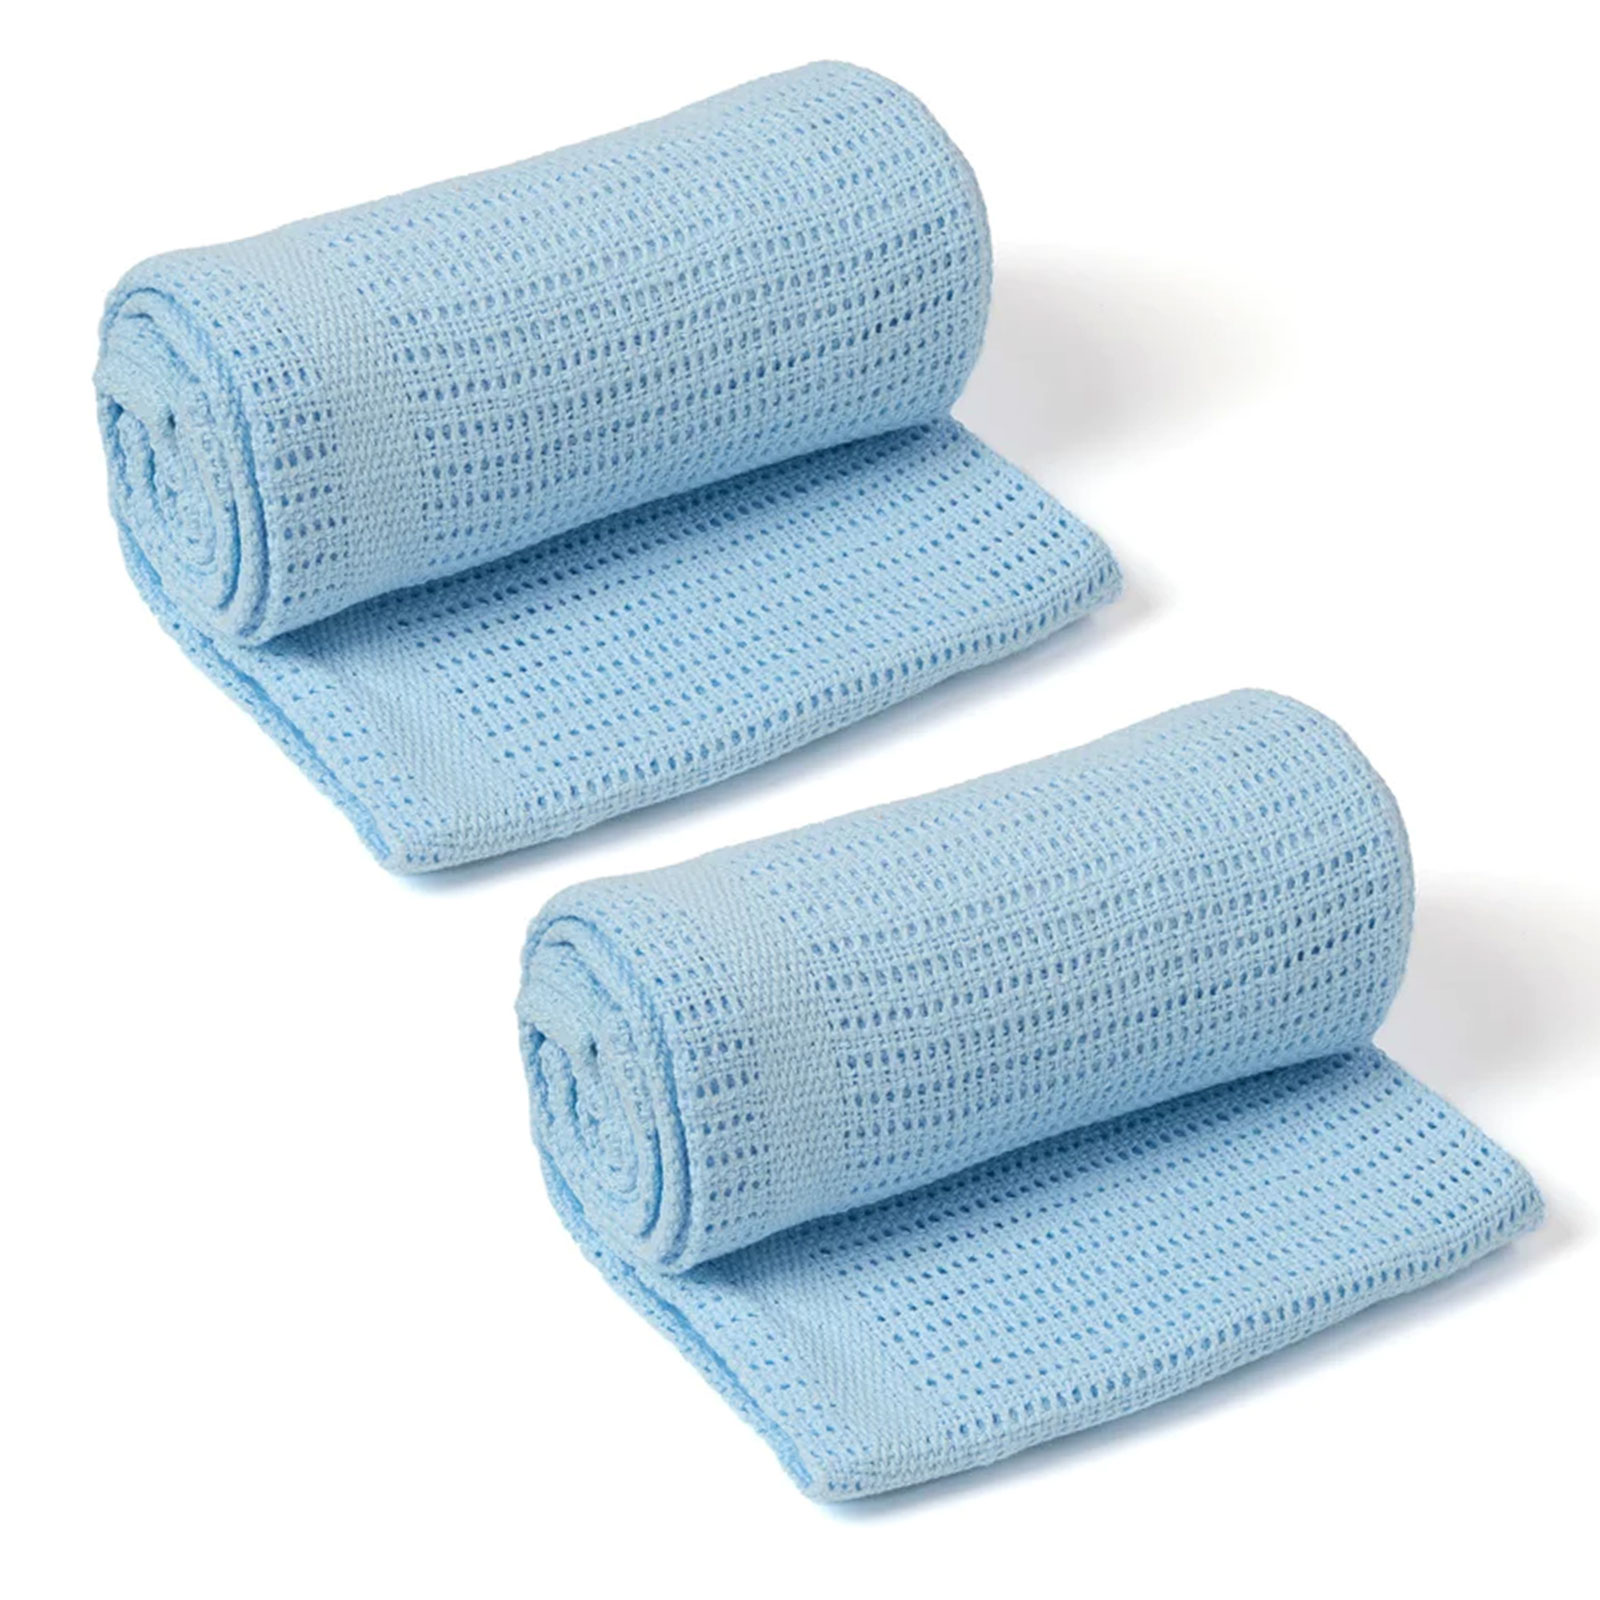 Soft Cotton Pram/Moses Basket/Crib Cellular Blanket (2 Pack) - Blue